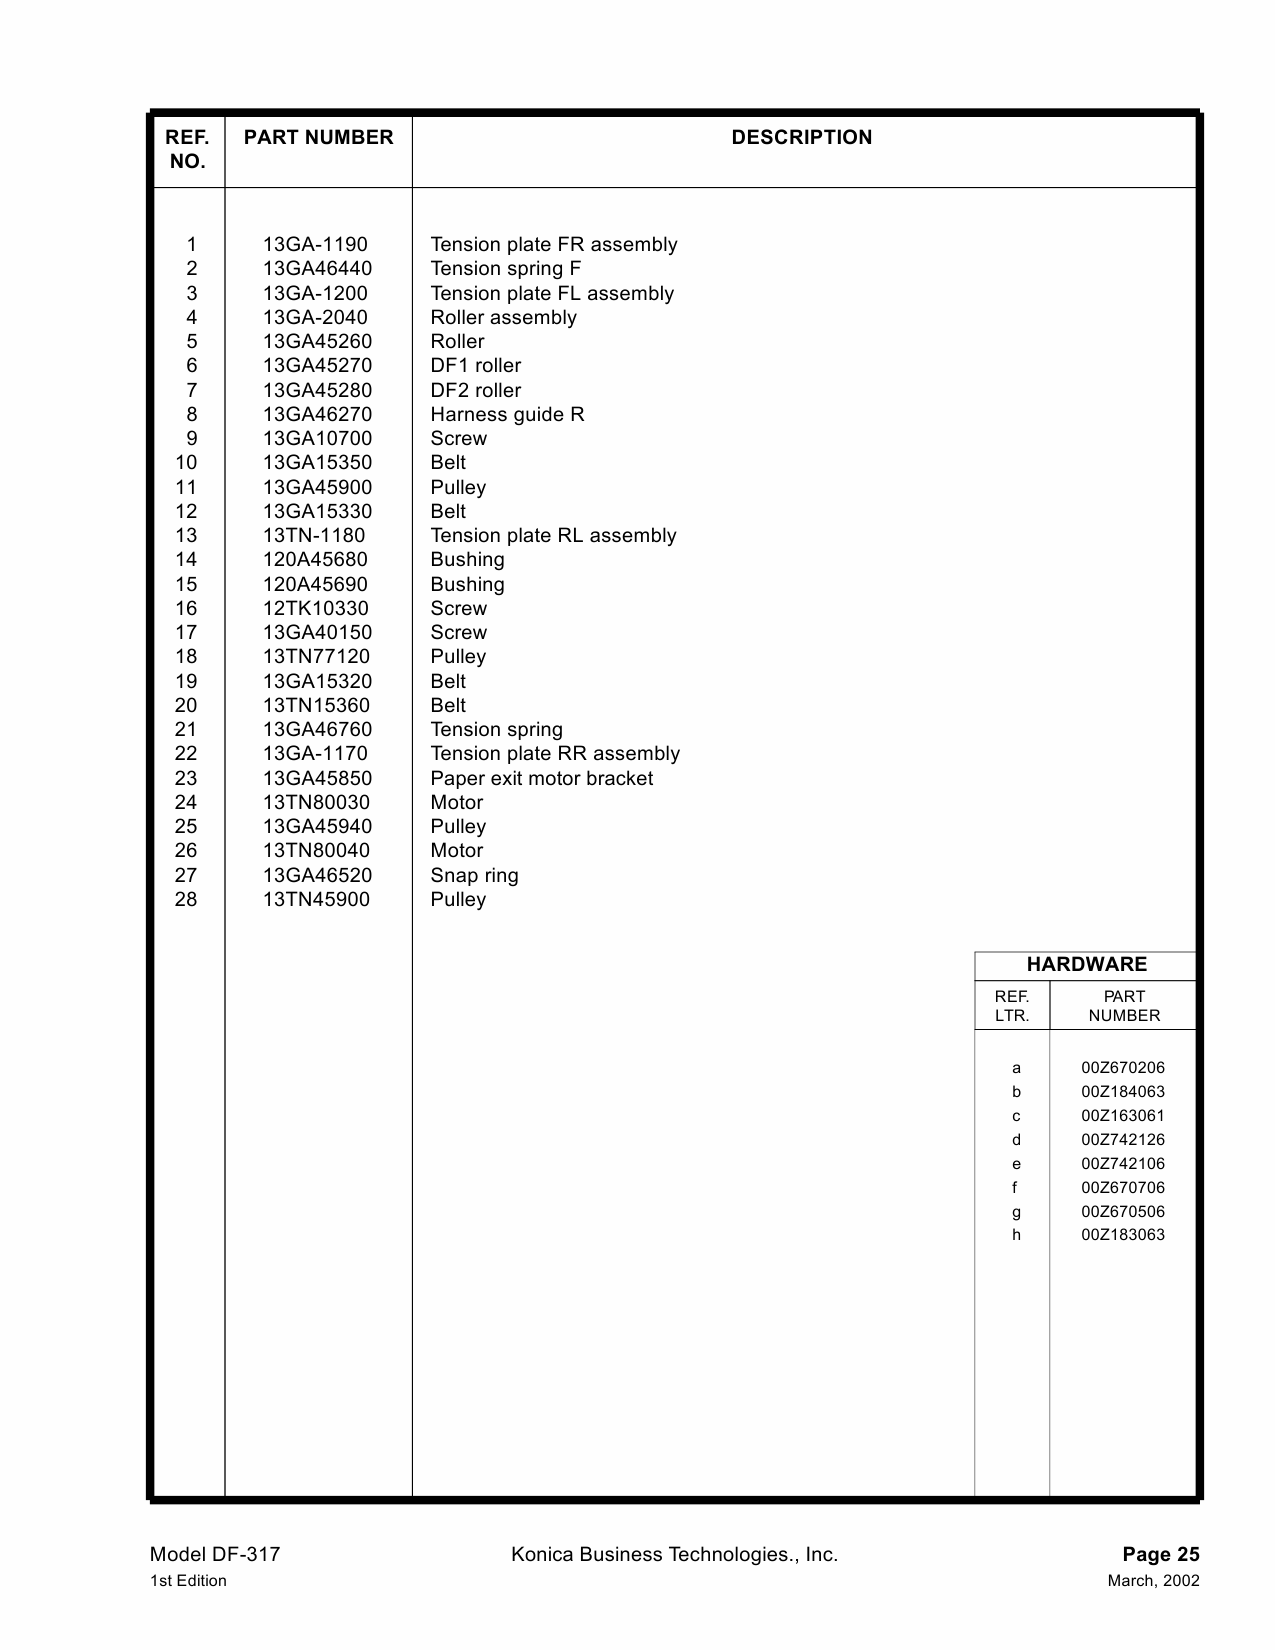 Konica-Minolta Options DF-317 Parts Manual-6